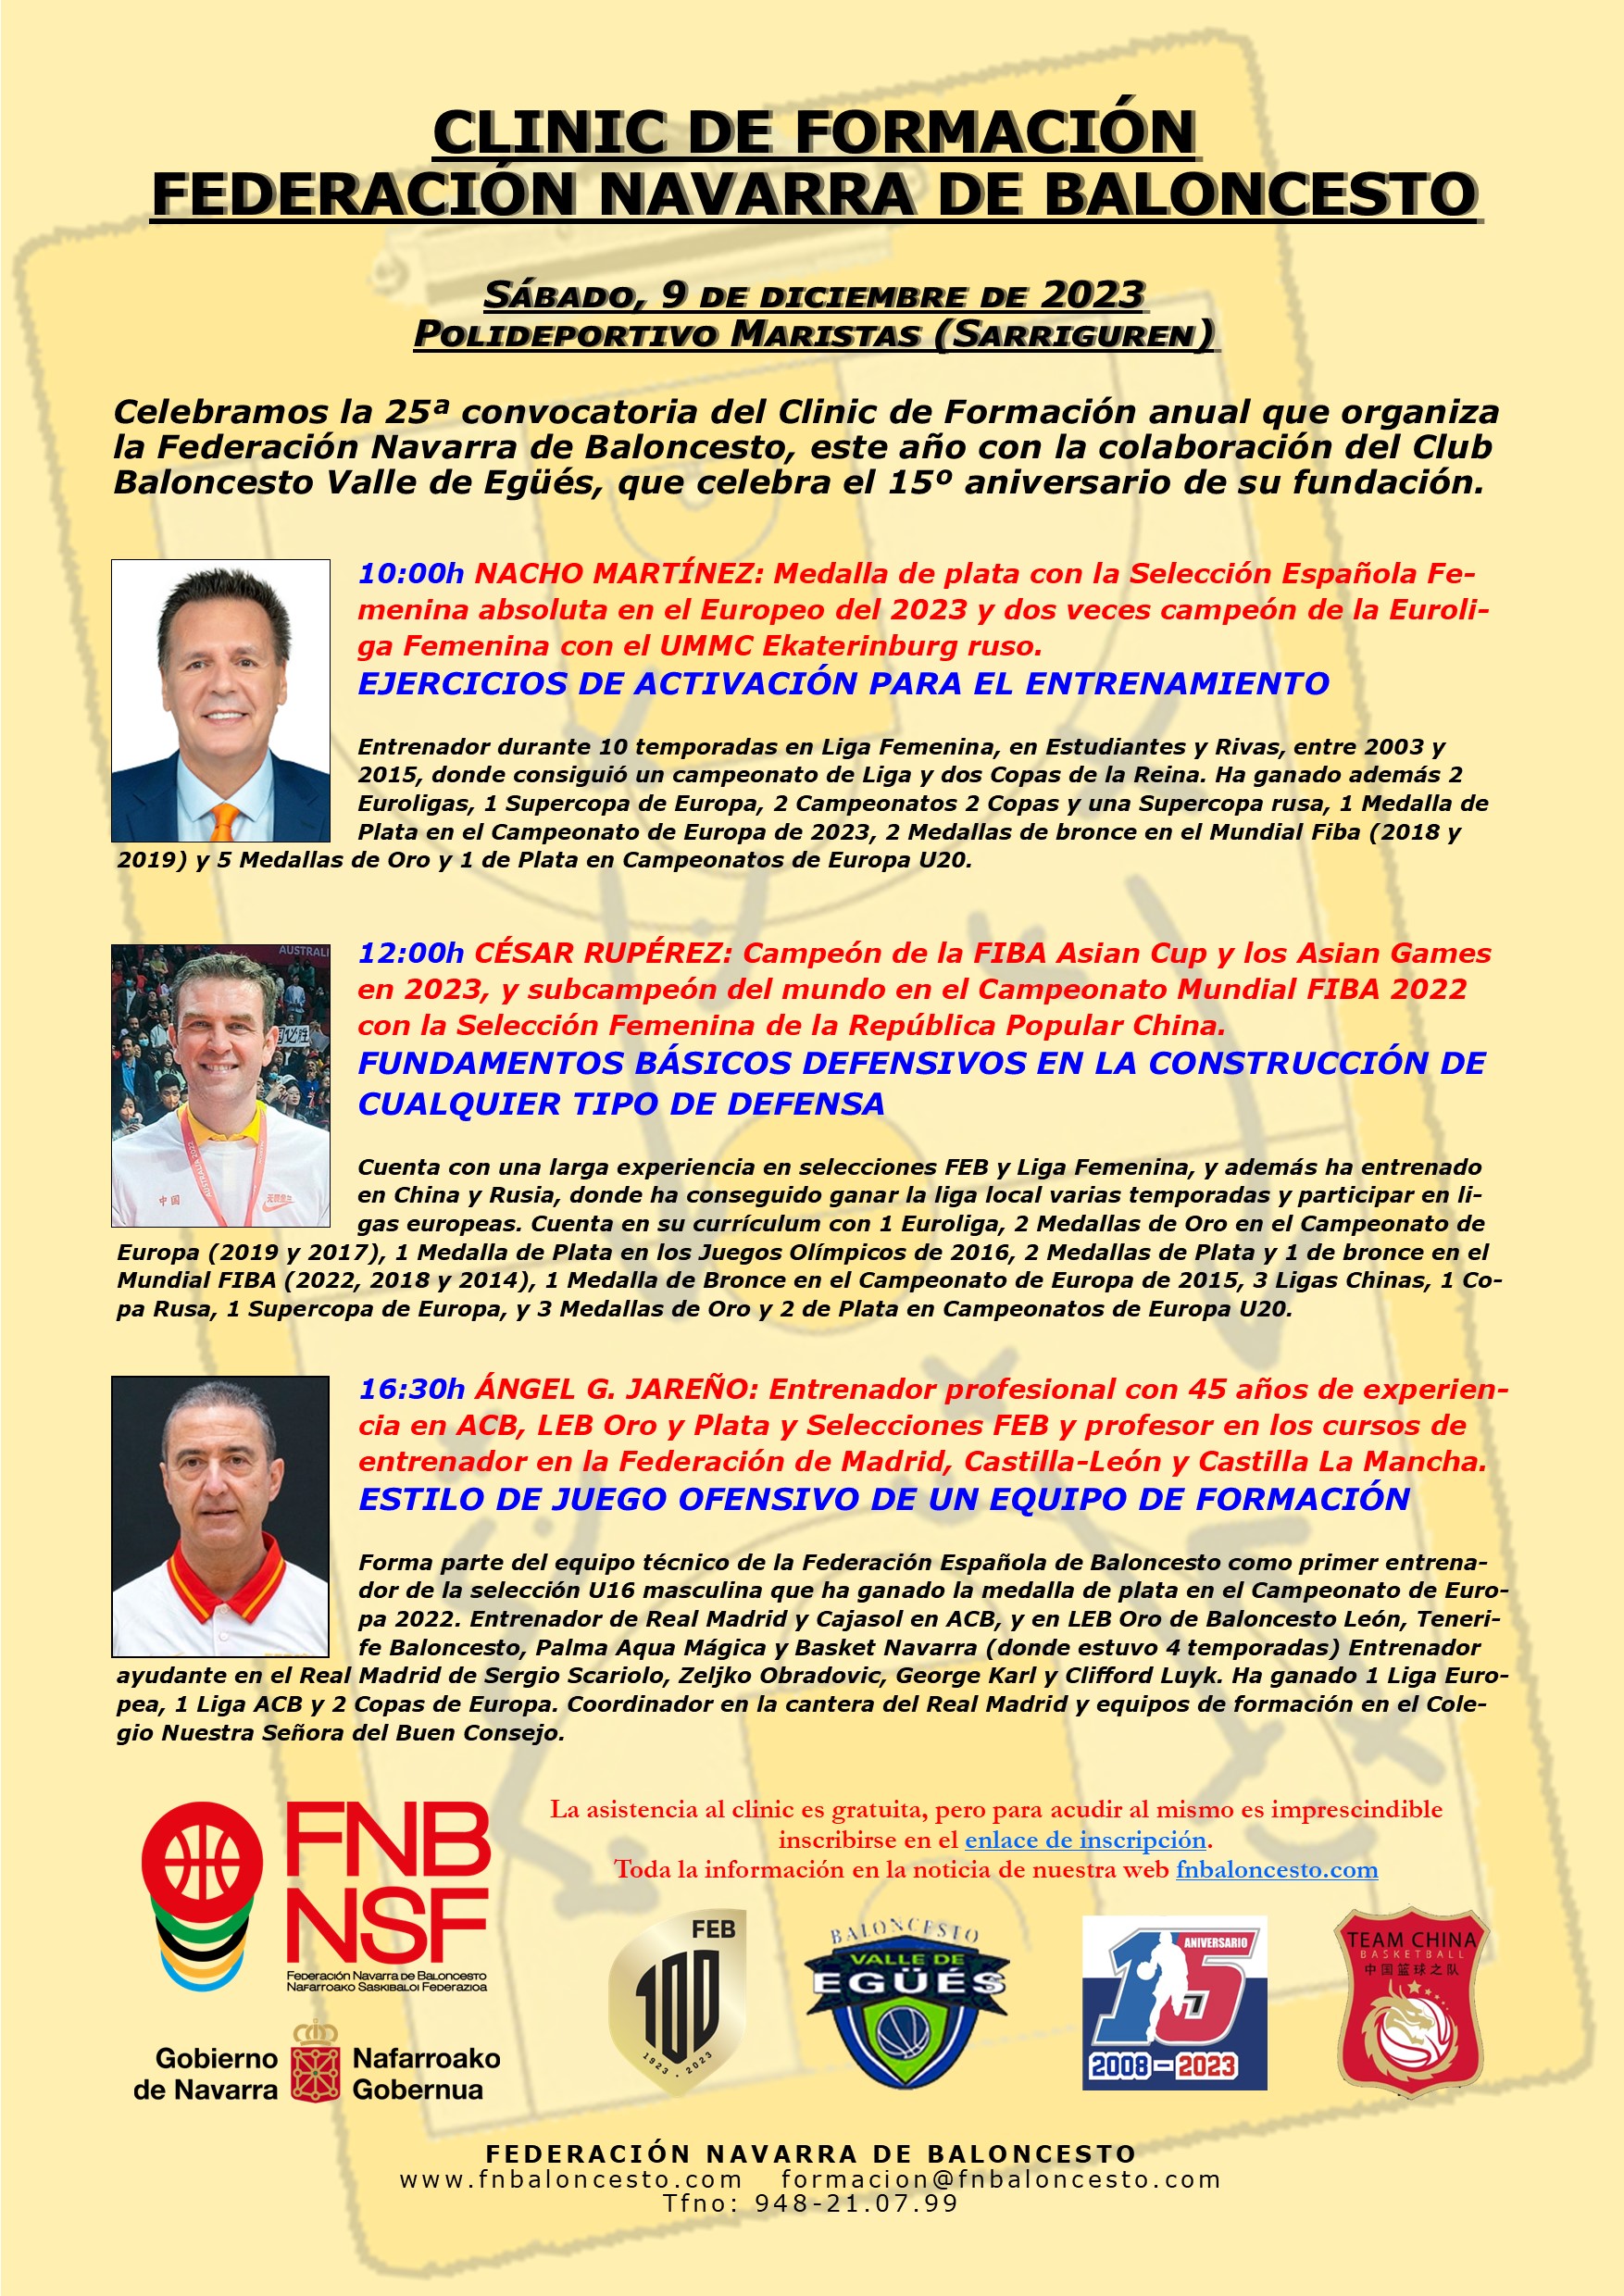 XXV Clinic de Formación. Federación Navarra de Baloncesto